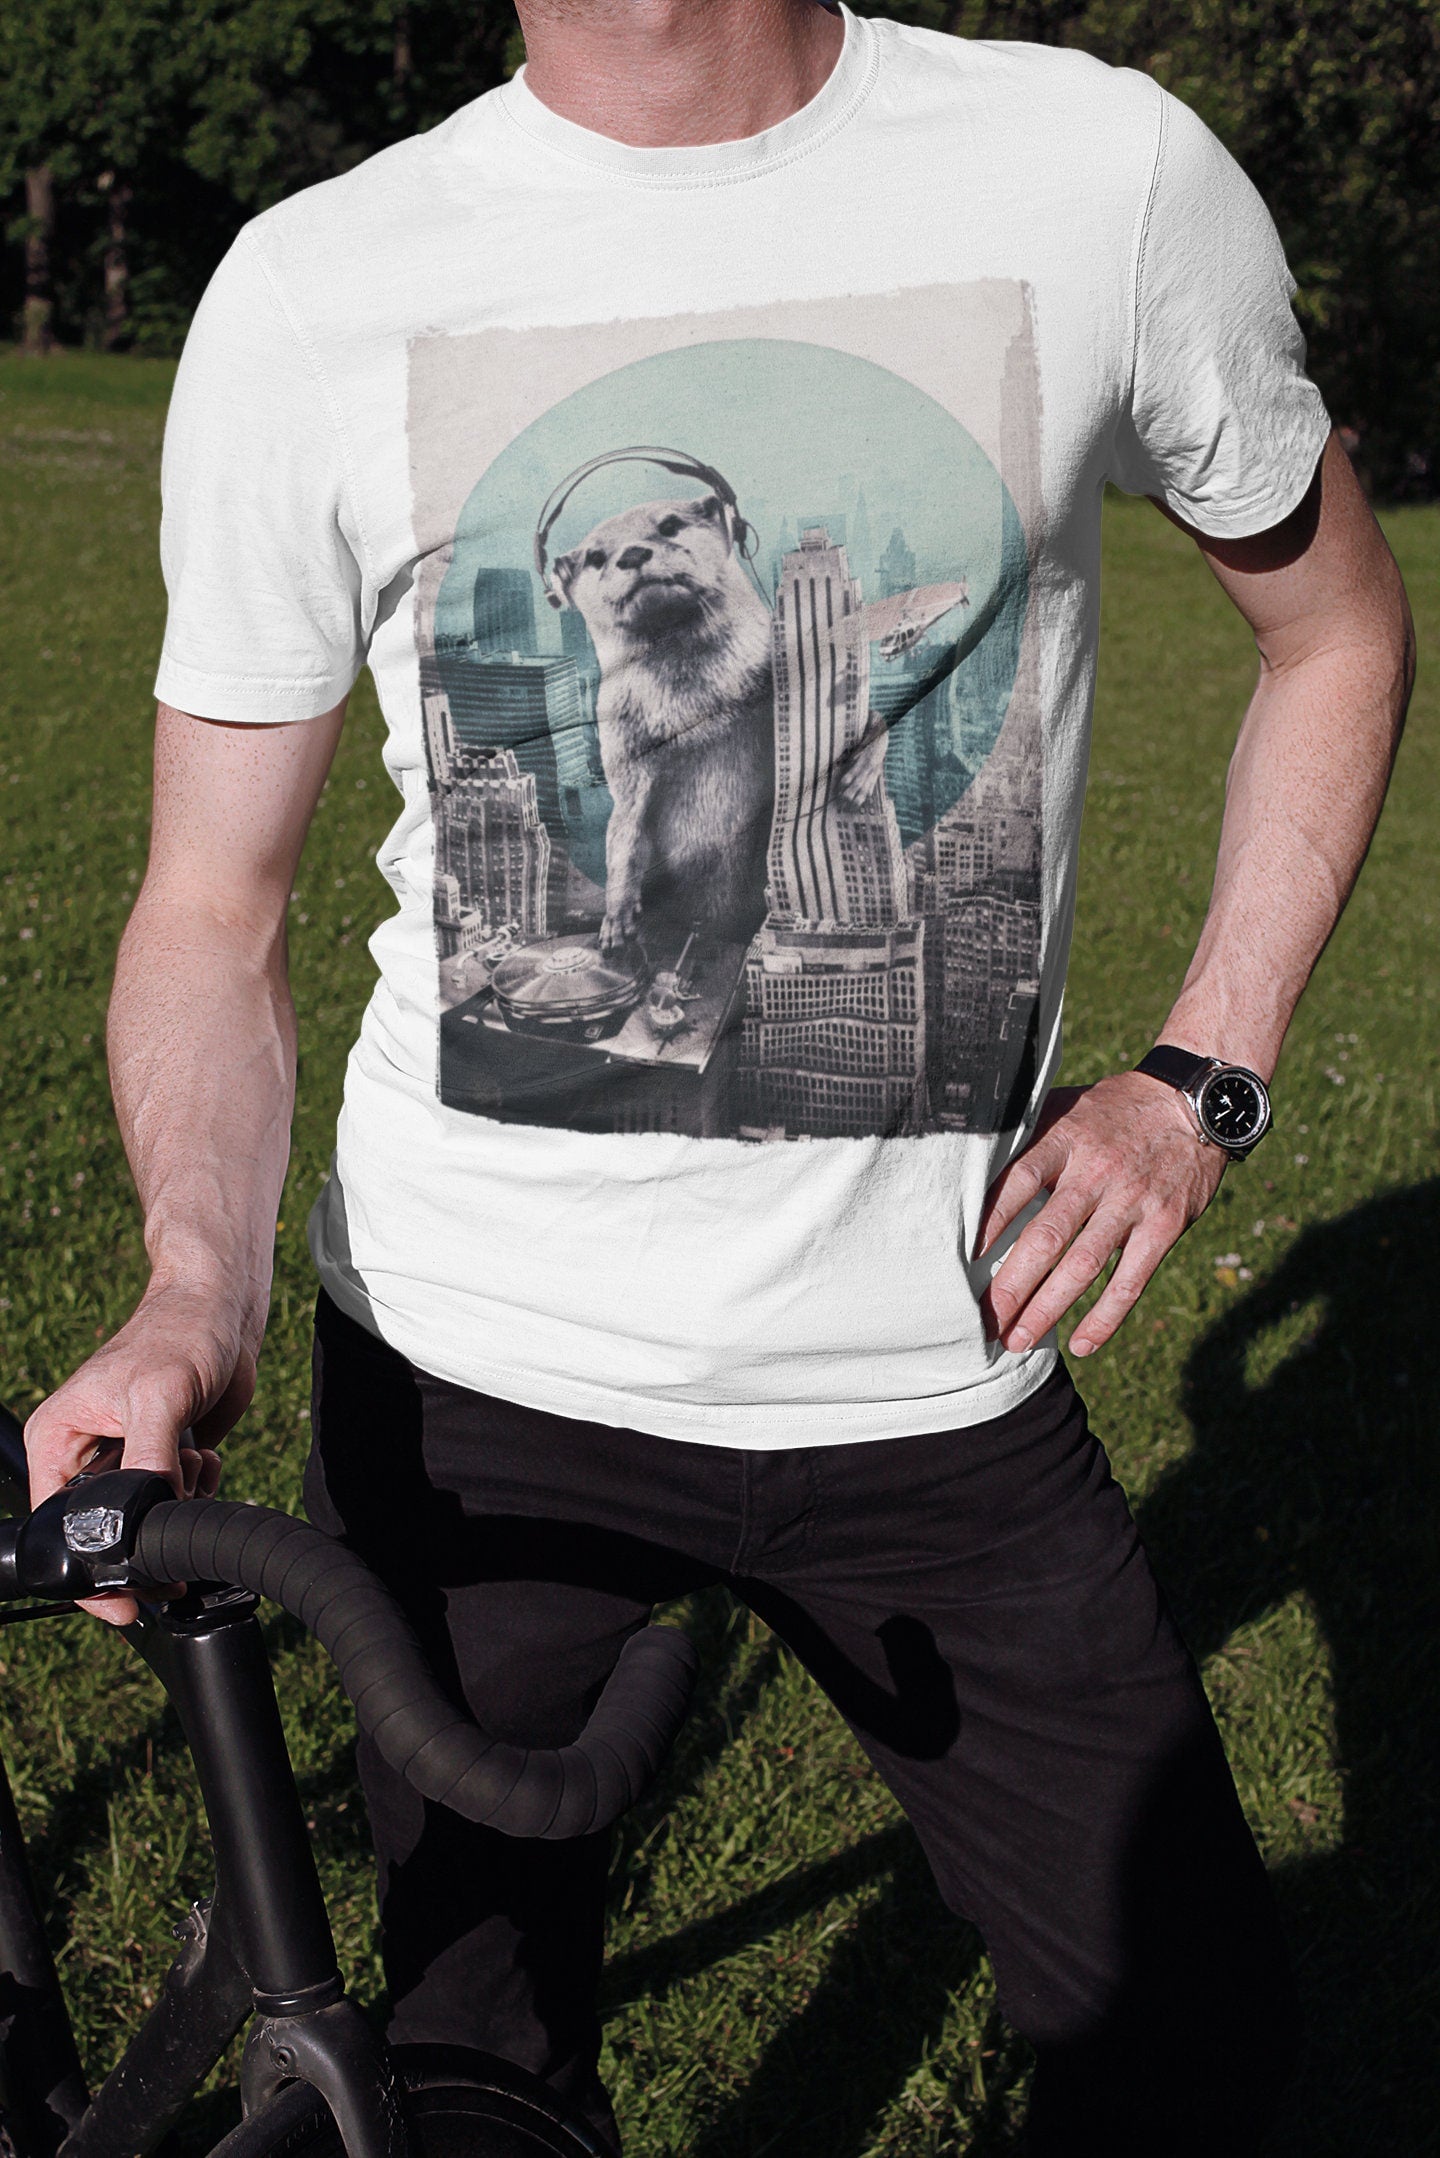 Men's Otter T-shirt, DJ Otter Mens Tshirt, Funny Otter Art Print Shirt, Original Funny Animal Art, Cool Otter Gift For Him